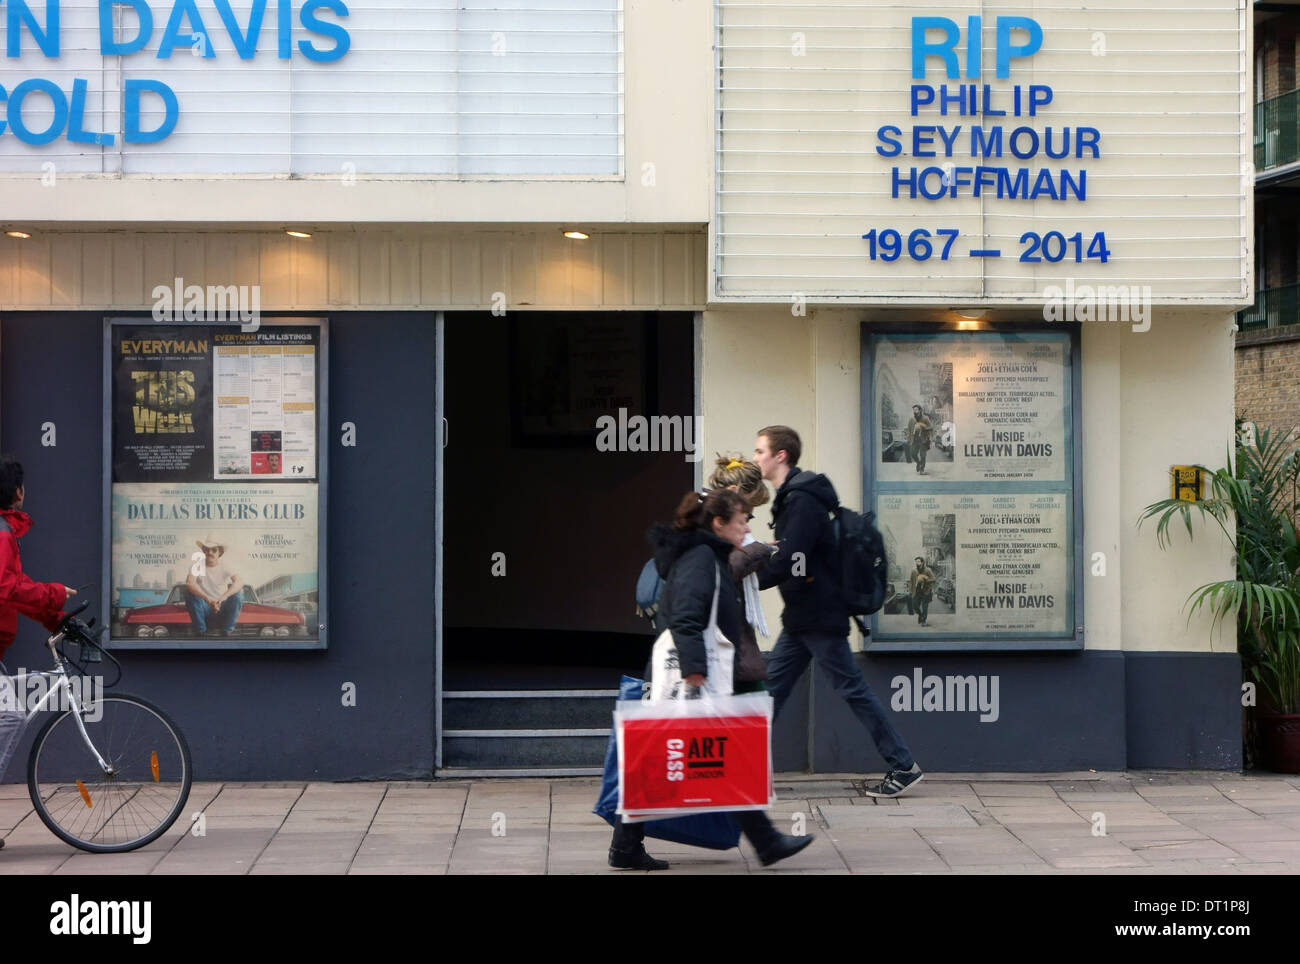 Hommage an Philip Seymour Hoffman auf dem Bildschirm auf den grünen Kino, London Stockfoto